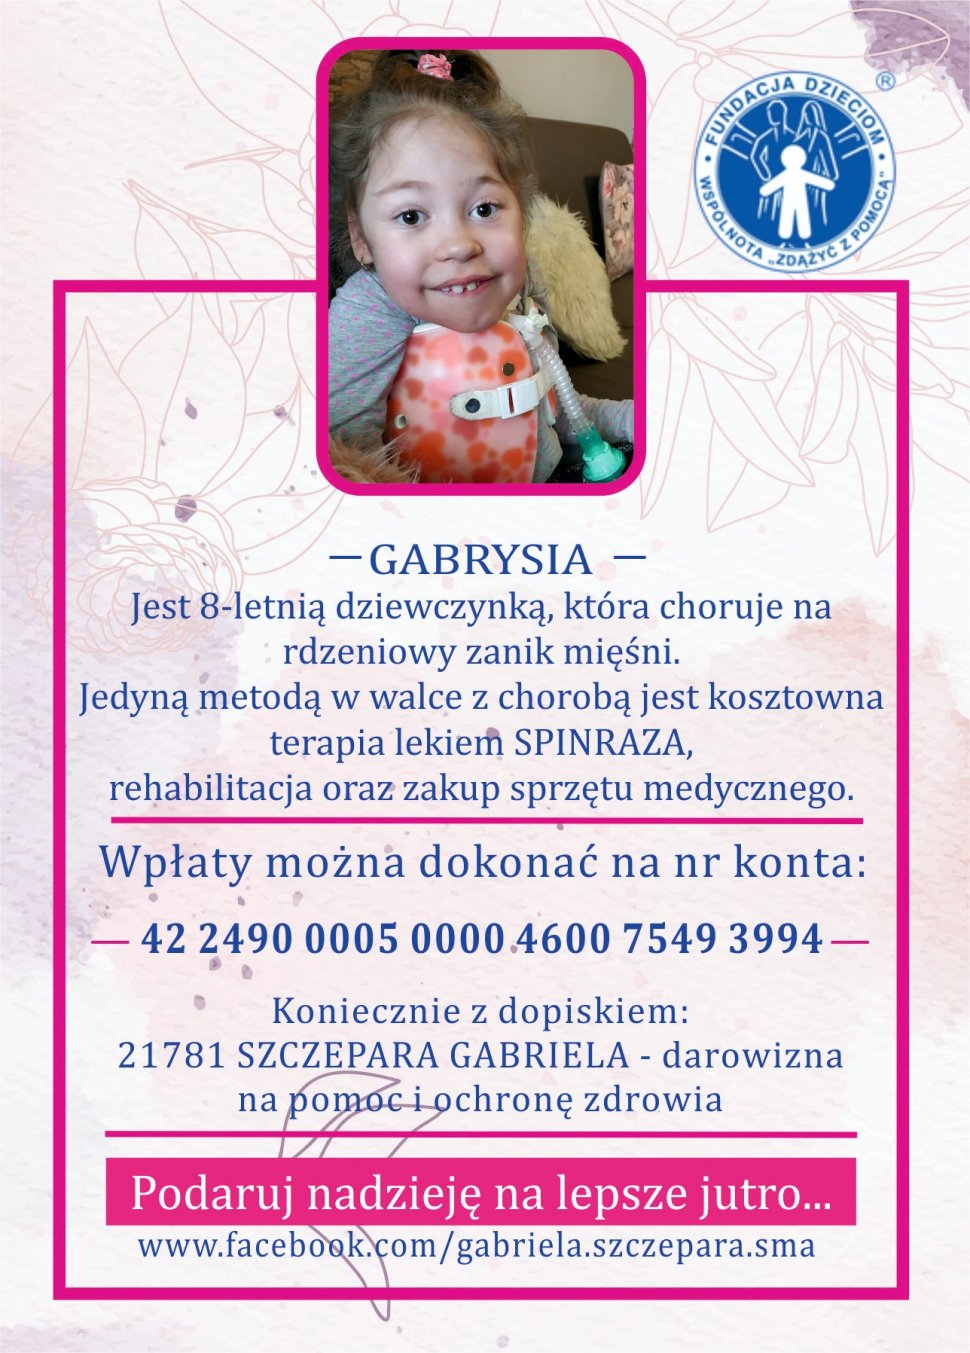 Fundacja Dzieciom Wspólnota Zdążyć z pomocą.  Zdjęcie Gabrysi  Gabrysia jest 8-letnią dziewczynką, która choruje na rdzeniowy zanik mięśni. Jedyną metodą w walce z chorobą jest kosztowna terapia lekiem SPINRAZA, rehabilitacja oraz zakup sprzętu medycznego.  Wpłaty można dokonać na numer konta: 42 2490 0005 0000 4600 7549 3994. Koniecznie z dopiskiem: 21781 SZCZEPARA GABRIELA – darowizna na pomoc i ochronę zdrowia.  Podaruj nadzieję na lepsze jutro...  www.facebook.com/gabriela.szczepara.sma